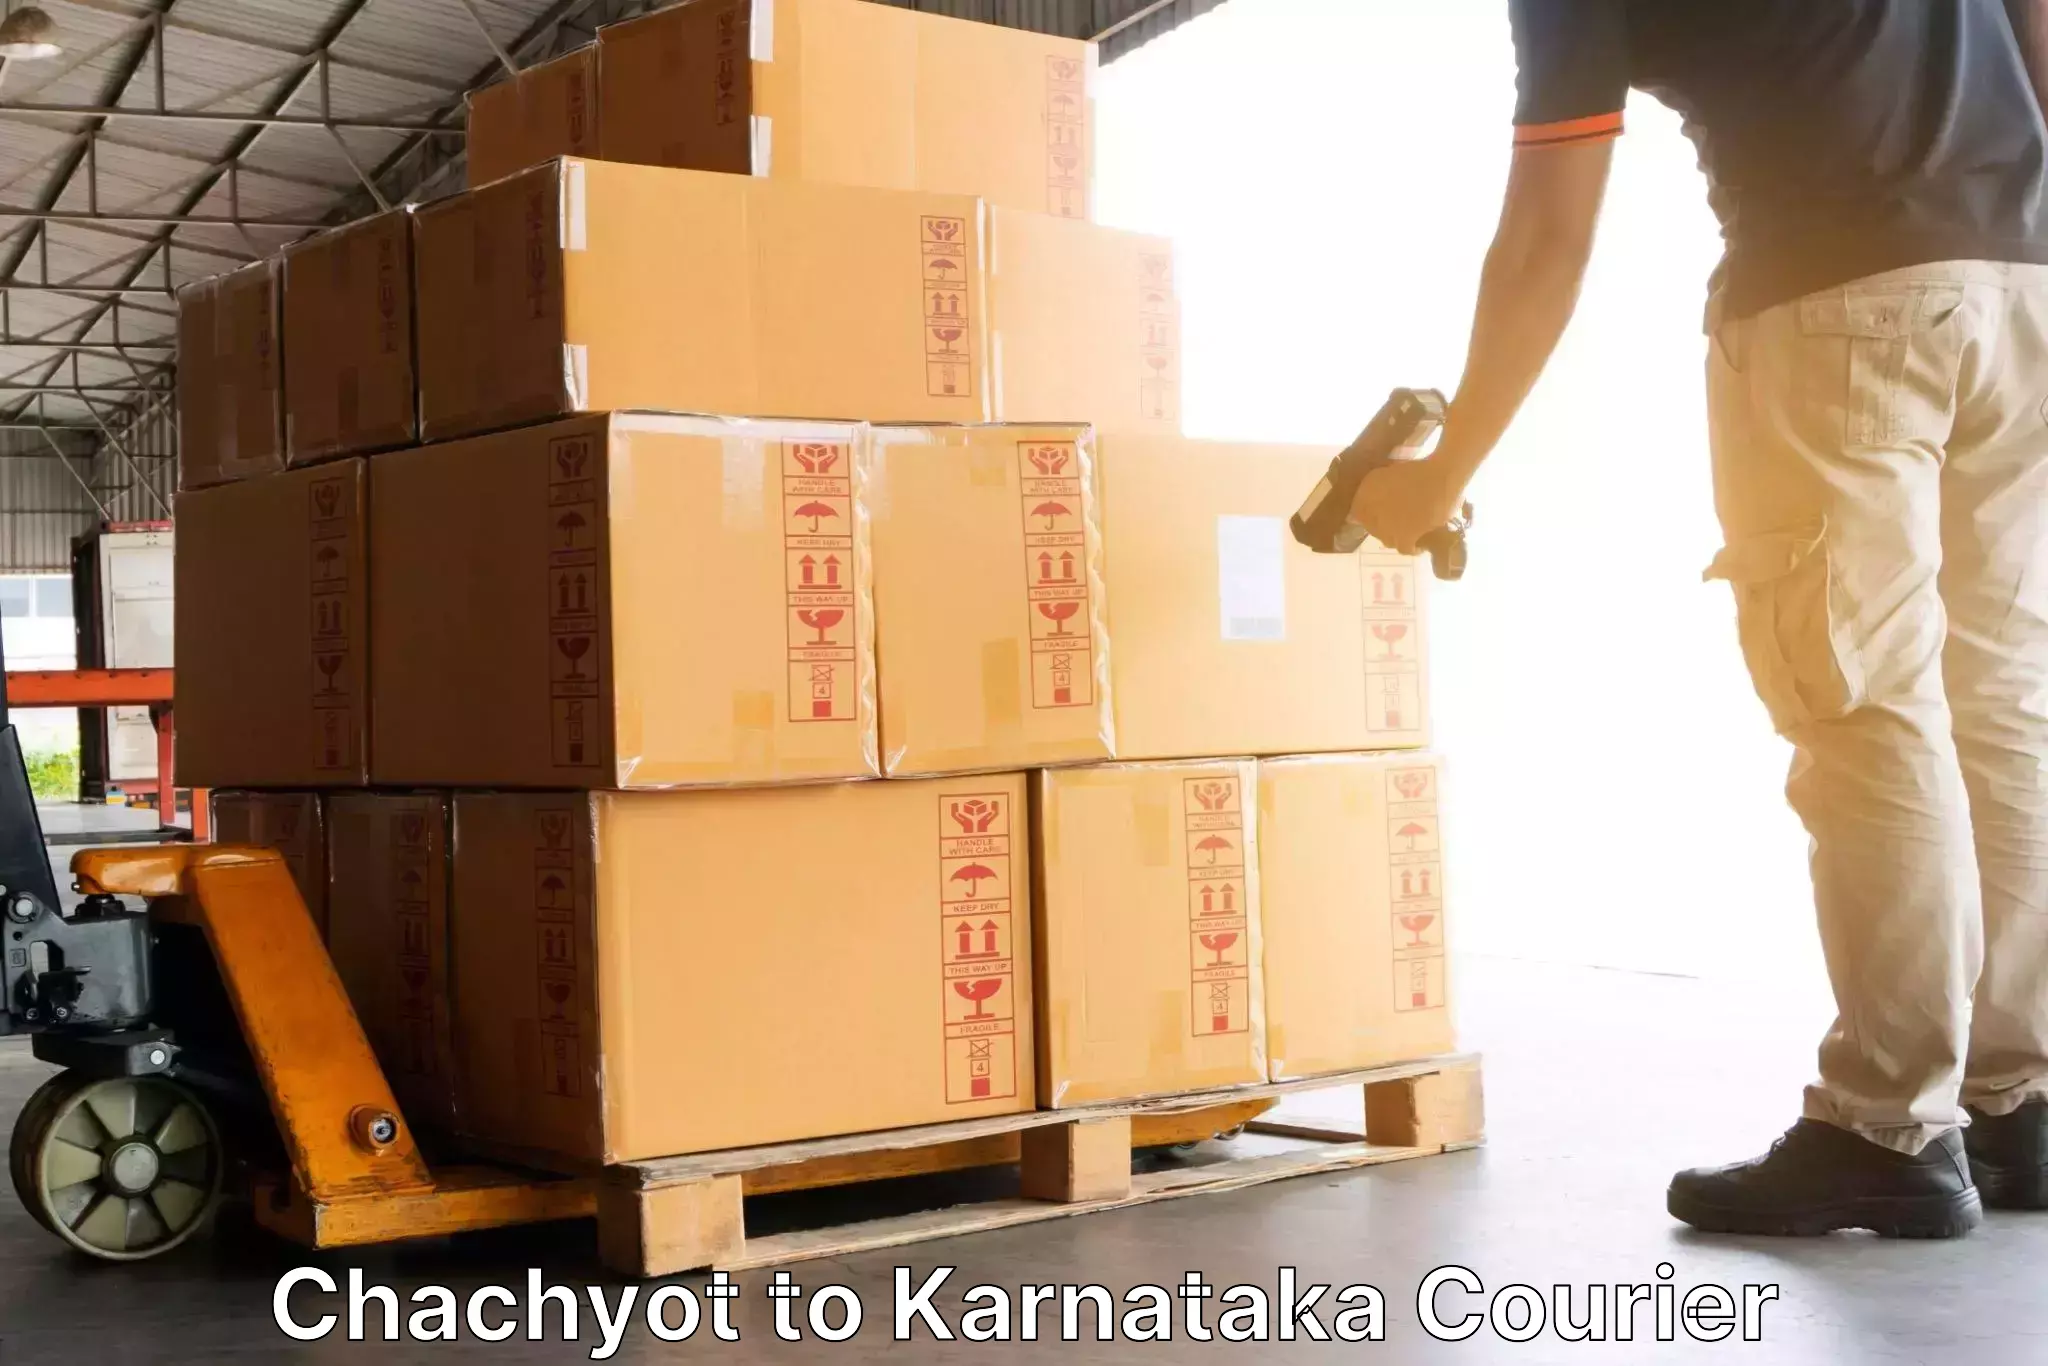 Express mail solutions Chachyot to Karnataka